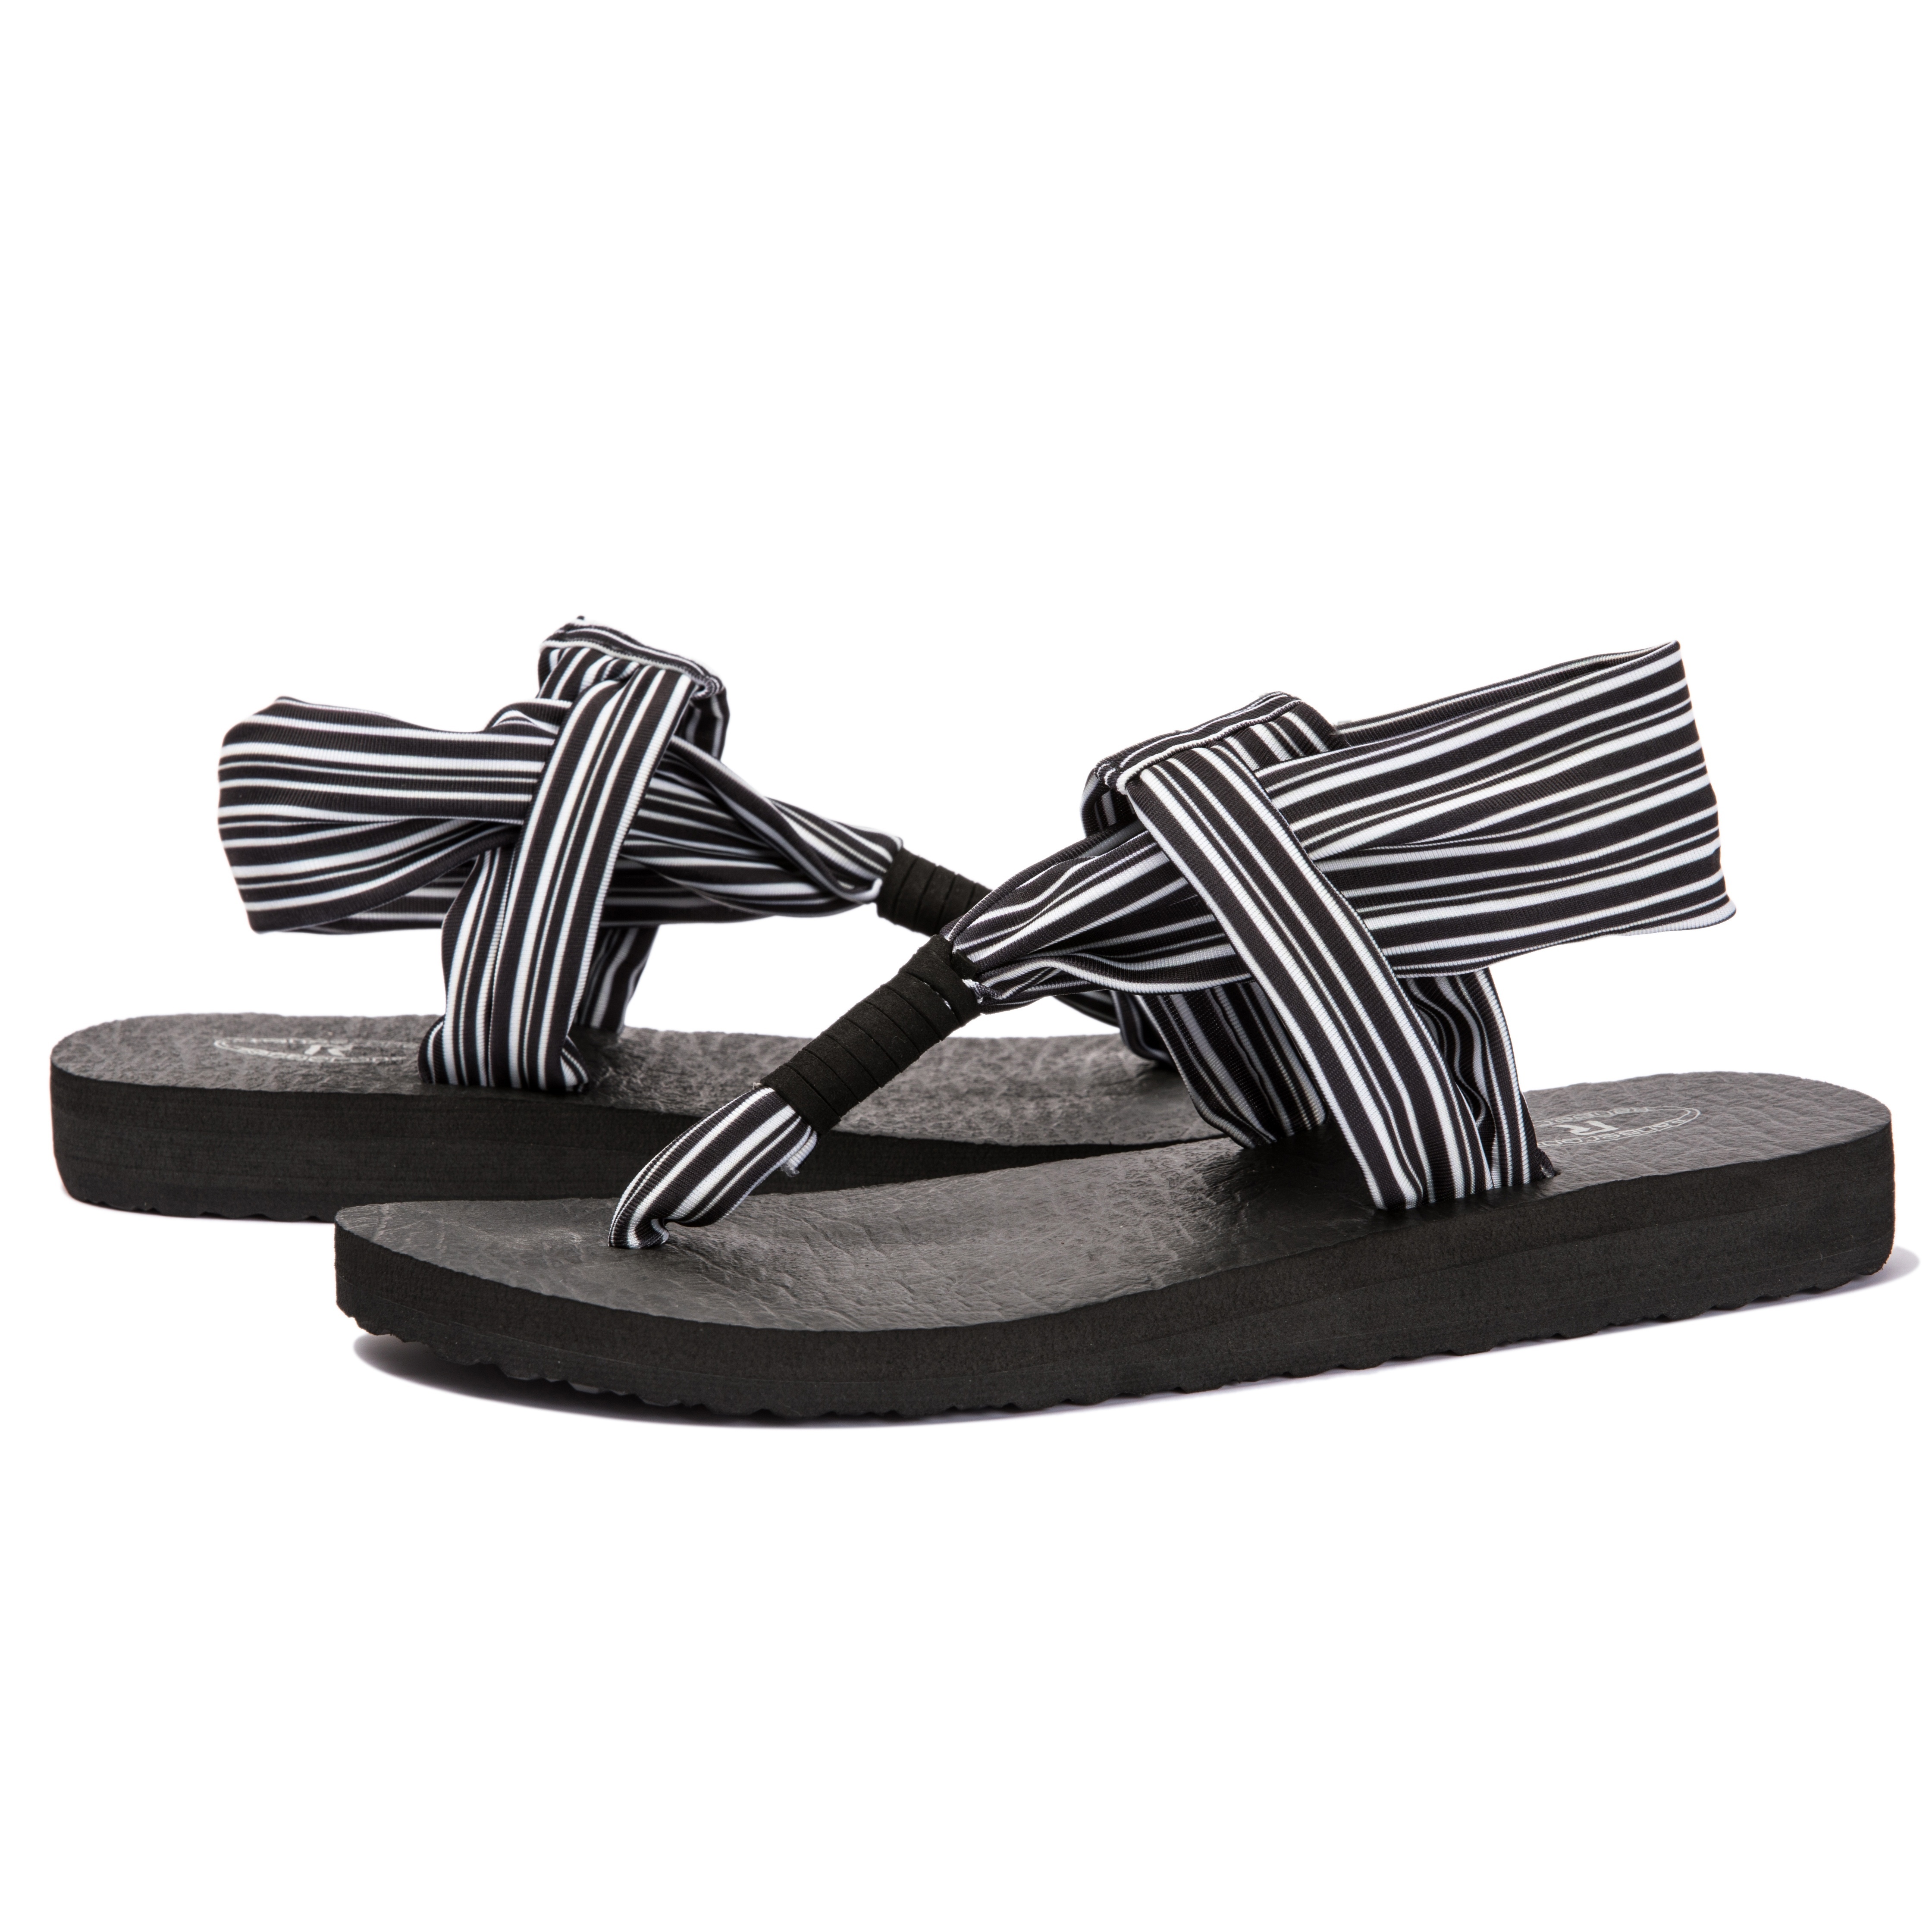 Sanuk Yoga Mat Sling 2 Black/White Striped Flip Flops Thong